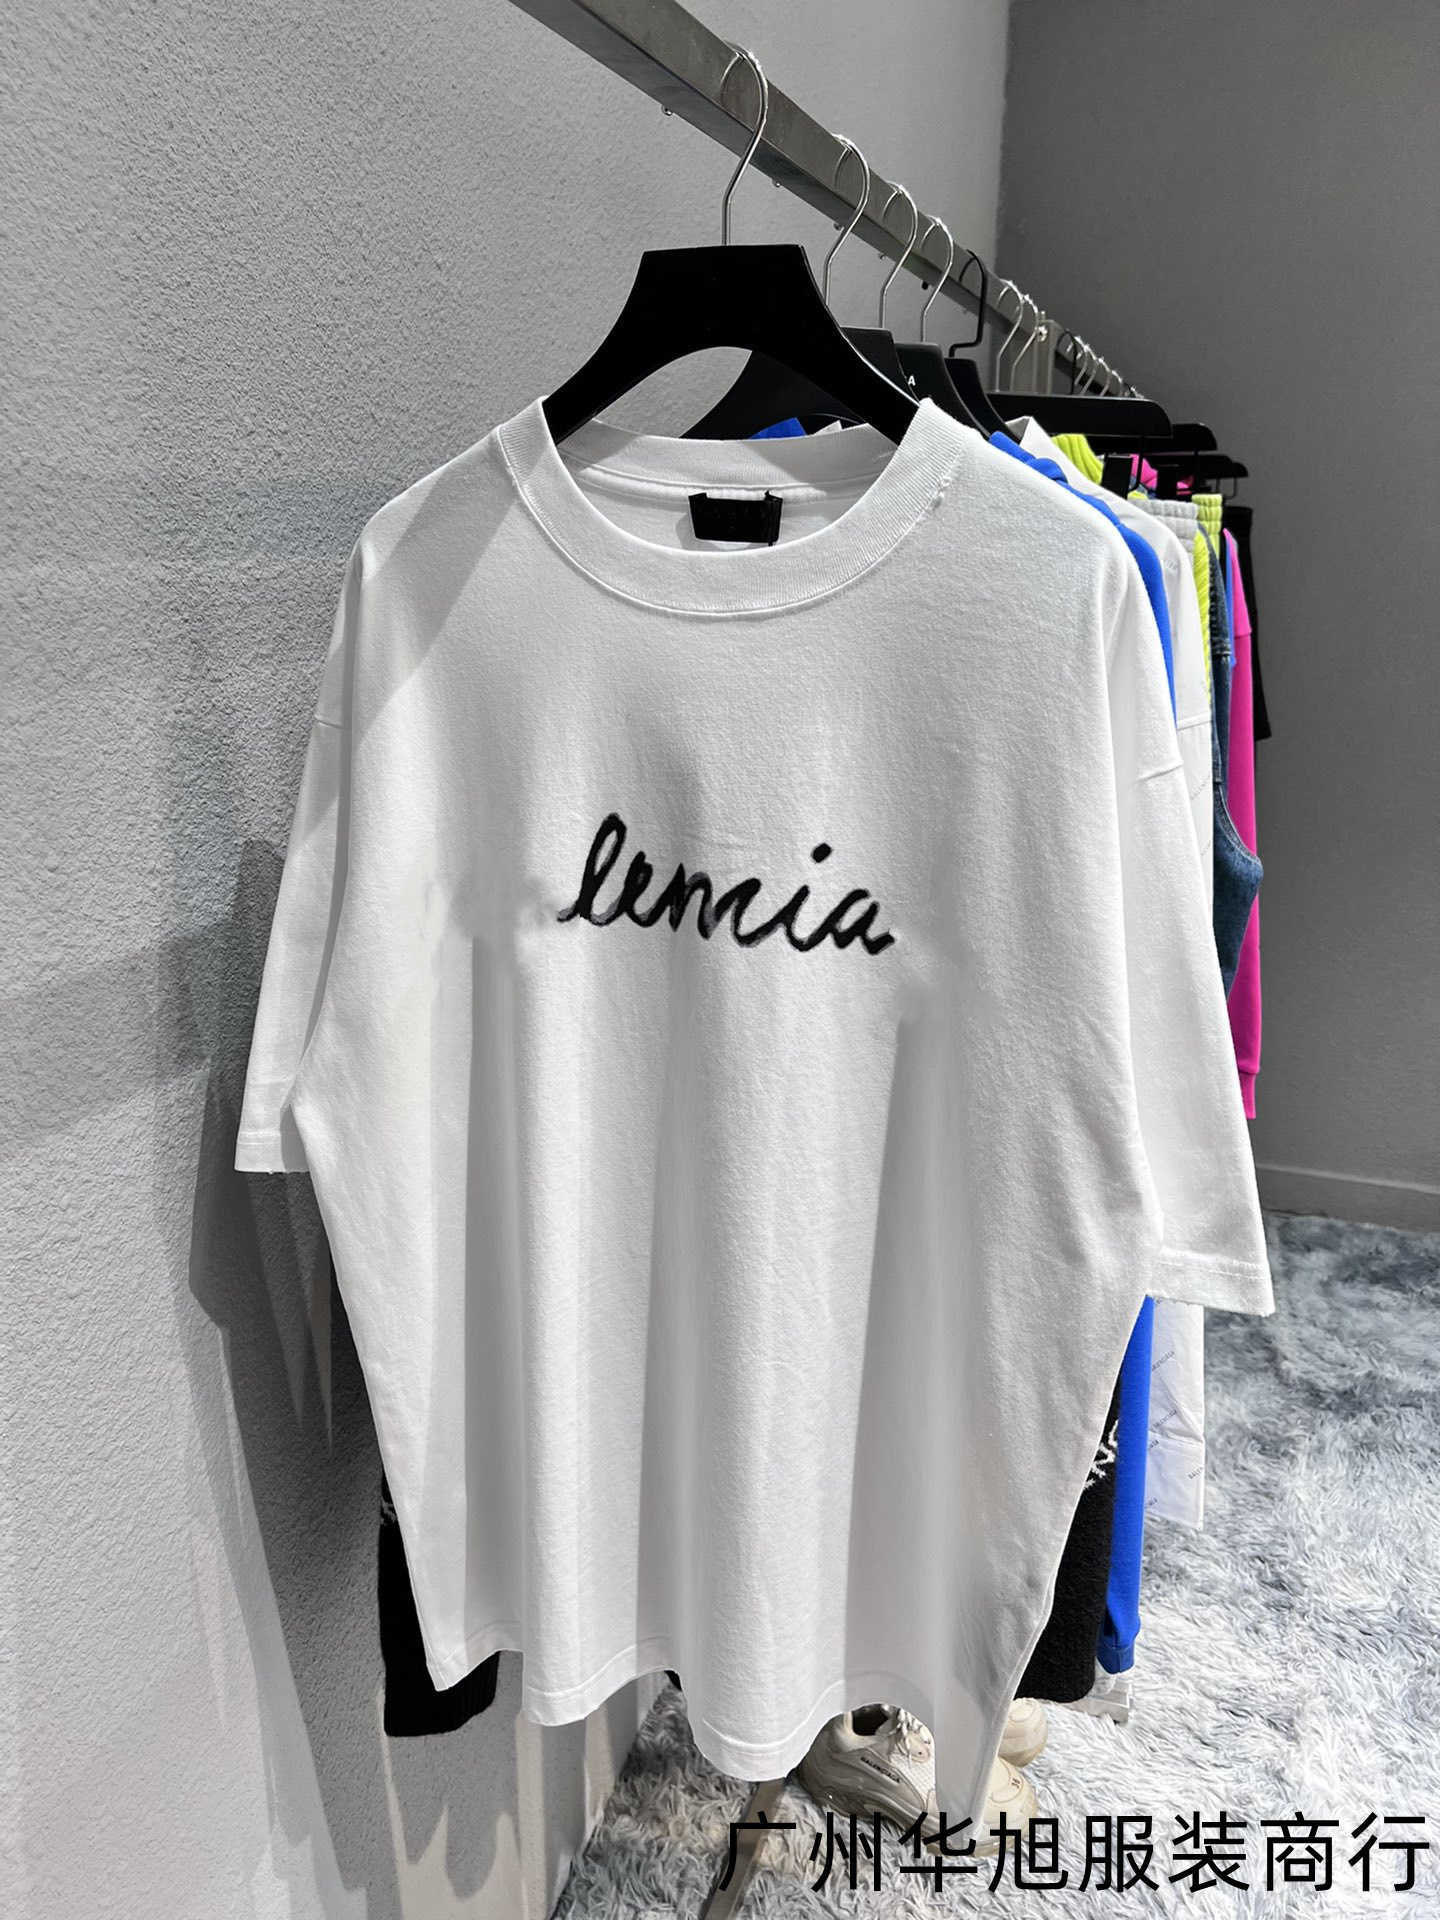 Designer verão feminino camiseta camisa corrija edição de alta qualidade painel frontal inglês alfabeto Digital Impressão de inscrição Summer Summer